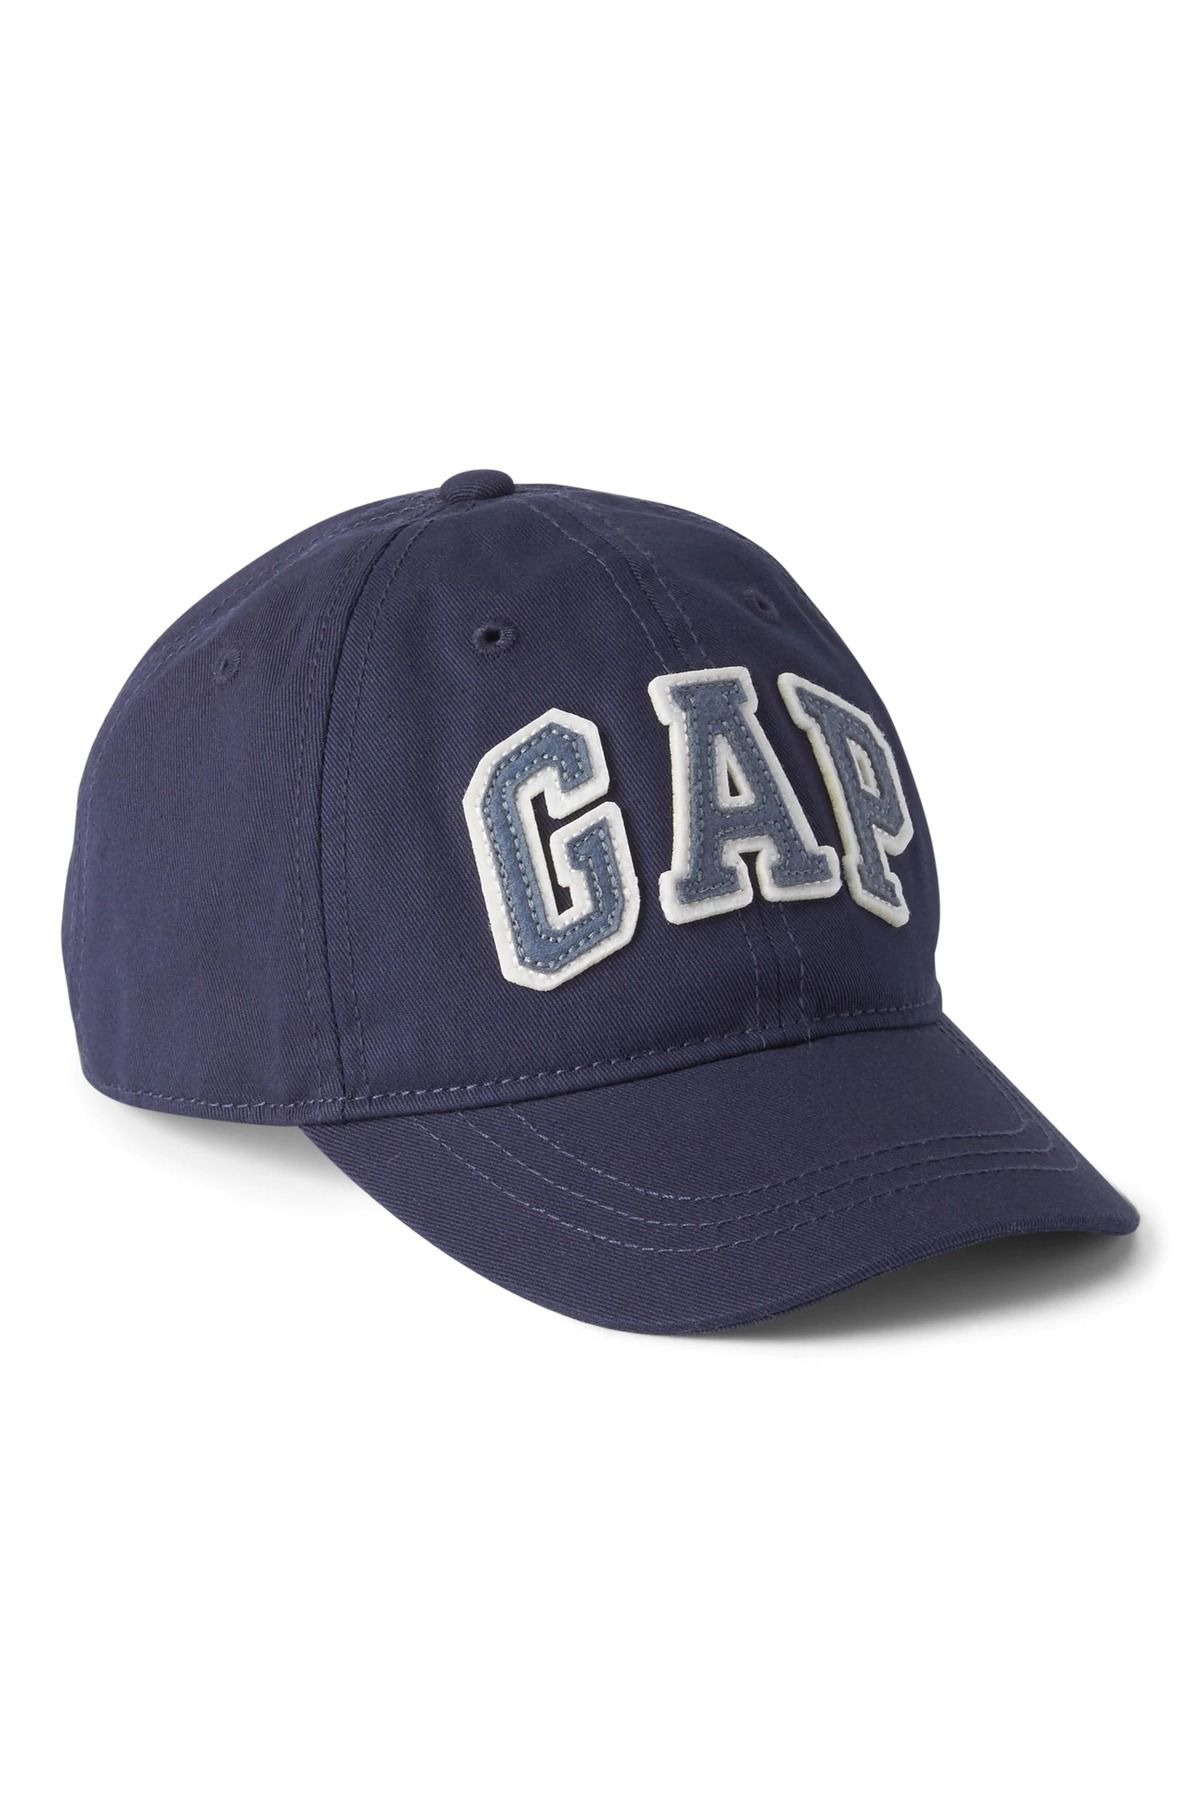 GAP Erkek Çocuk Lacivert Gap Logo Şapka